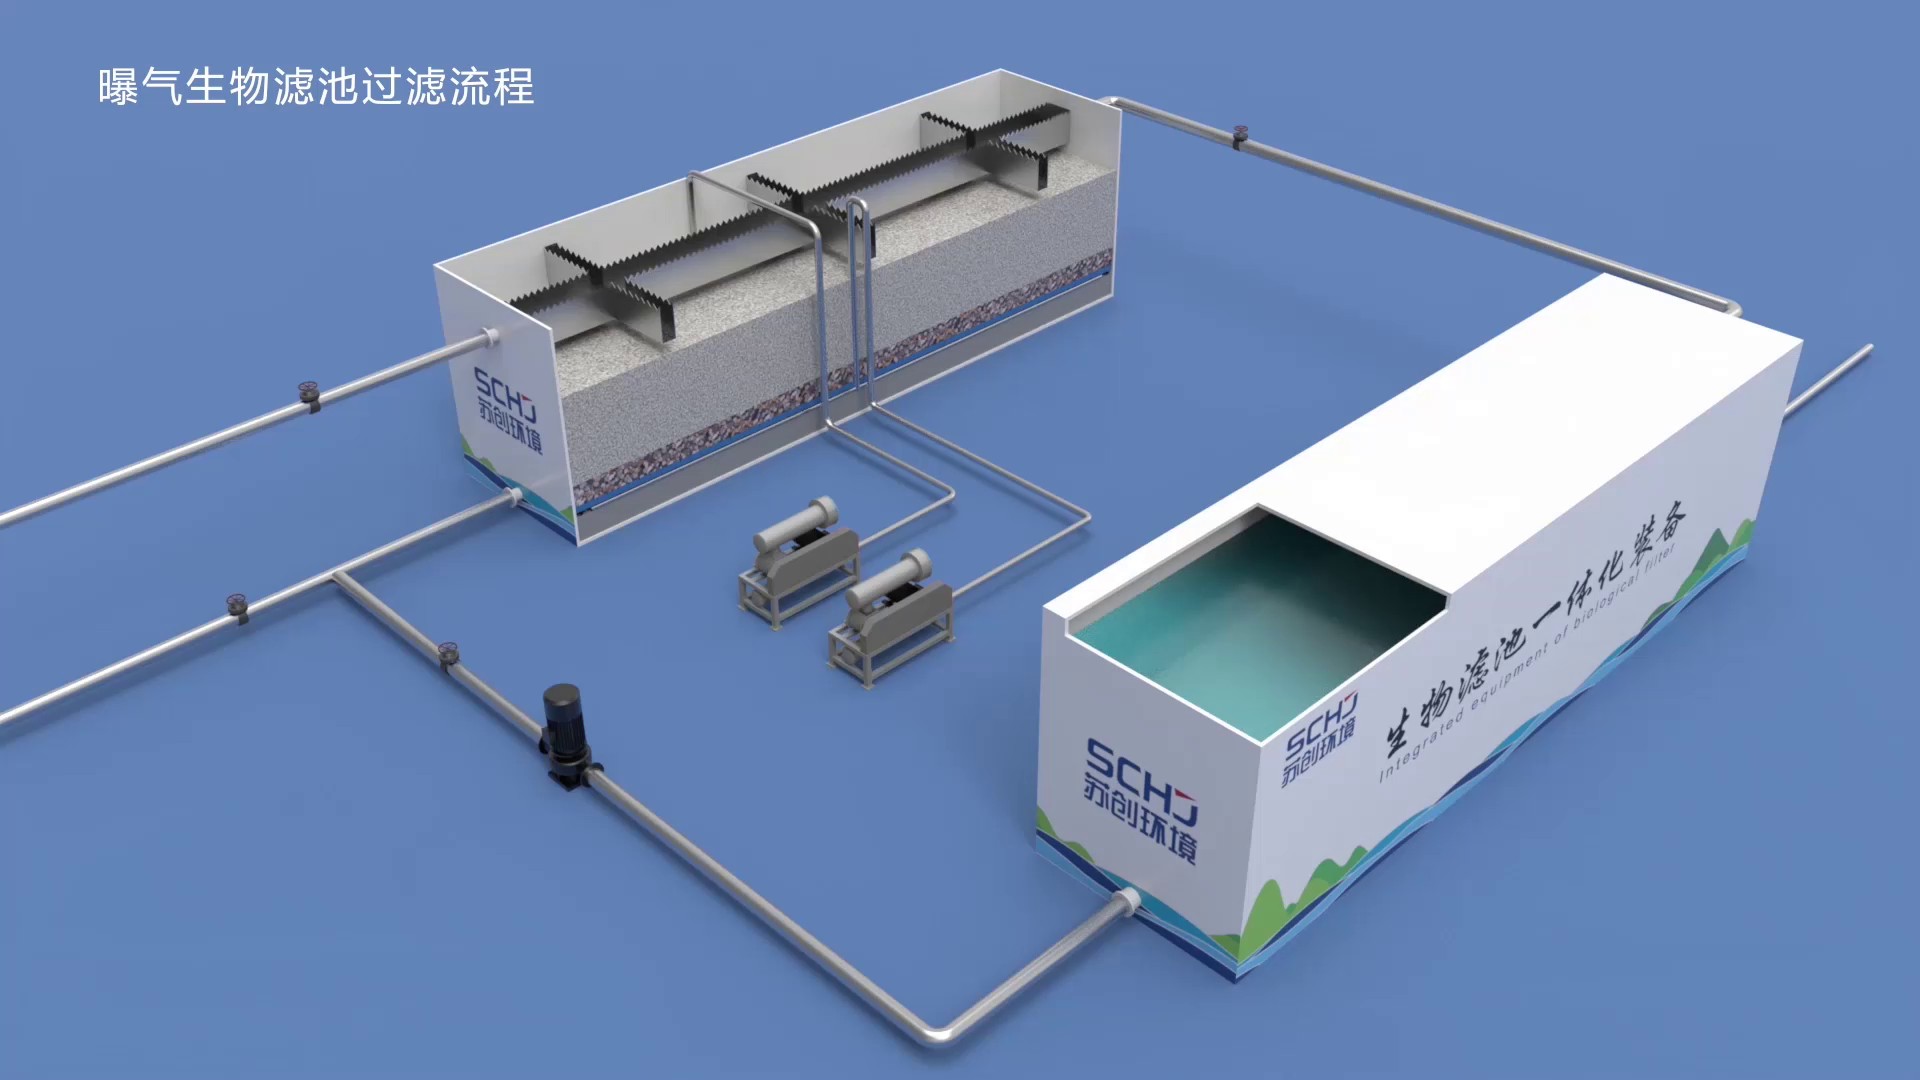 北京污水处理一体化装备产品介绍,一体化装备